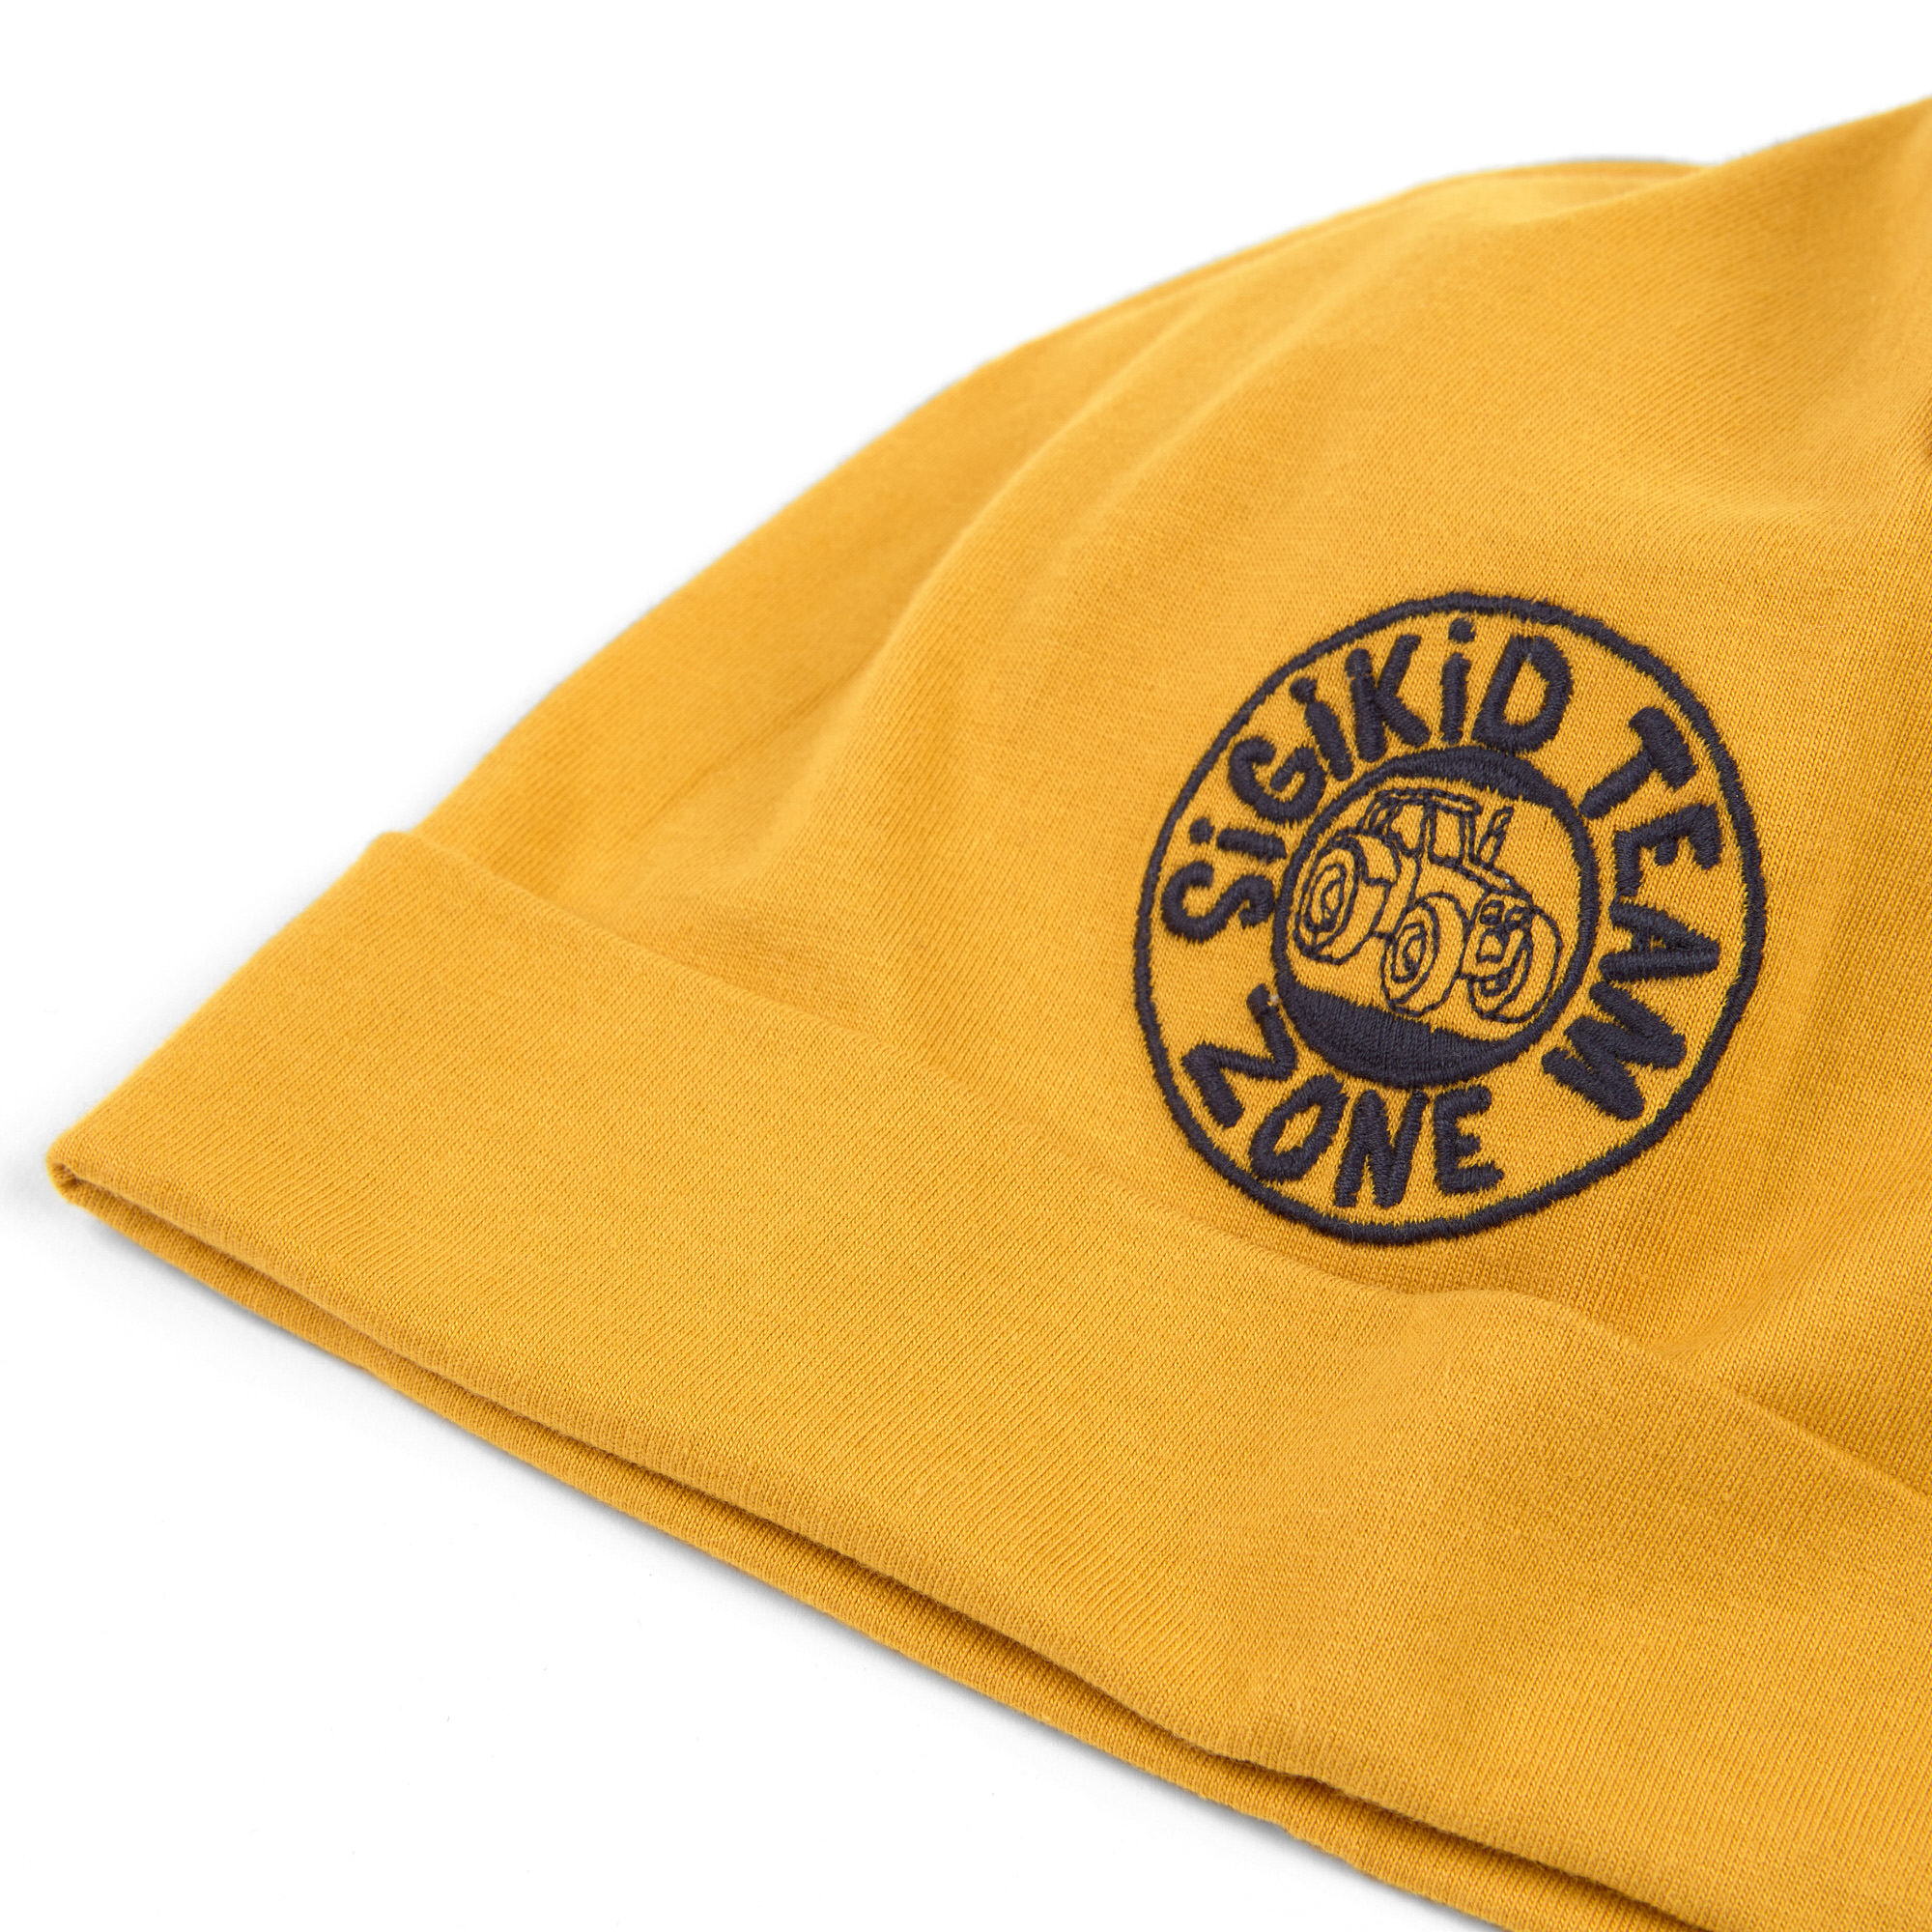 Children's beanie hat Team Zone, honey yellow